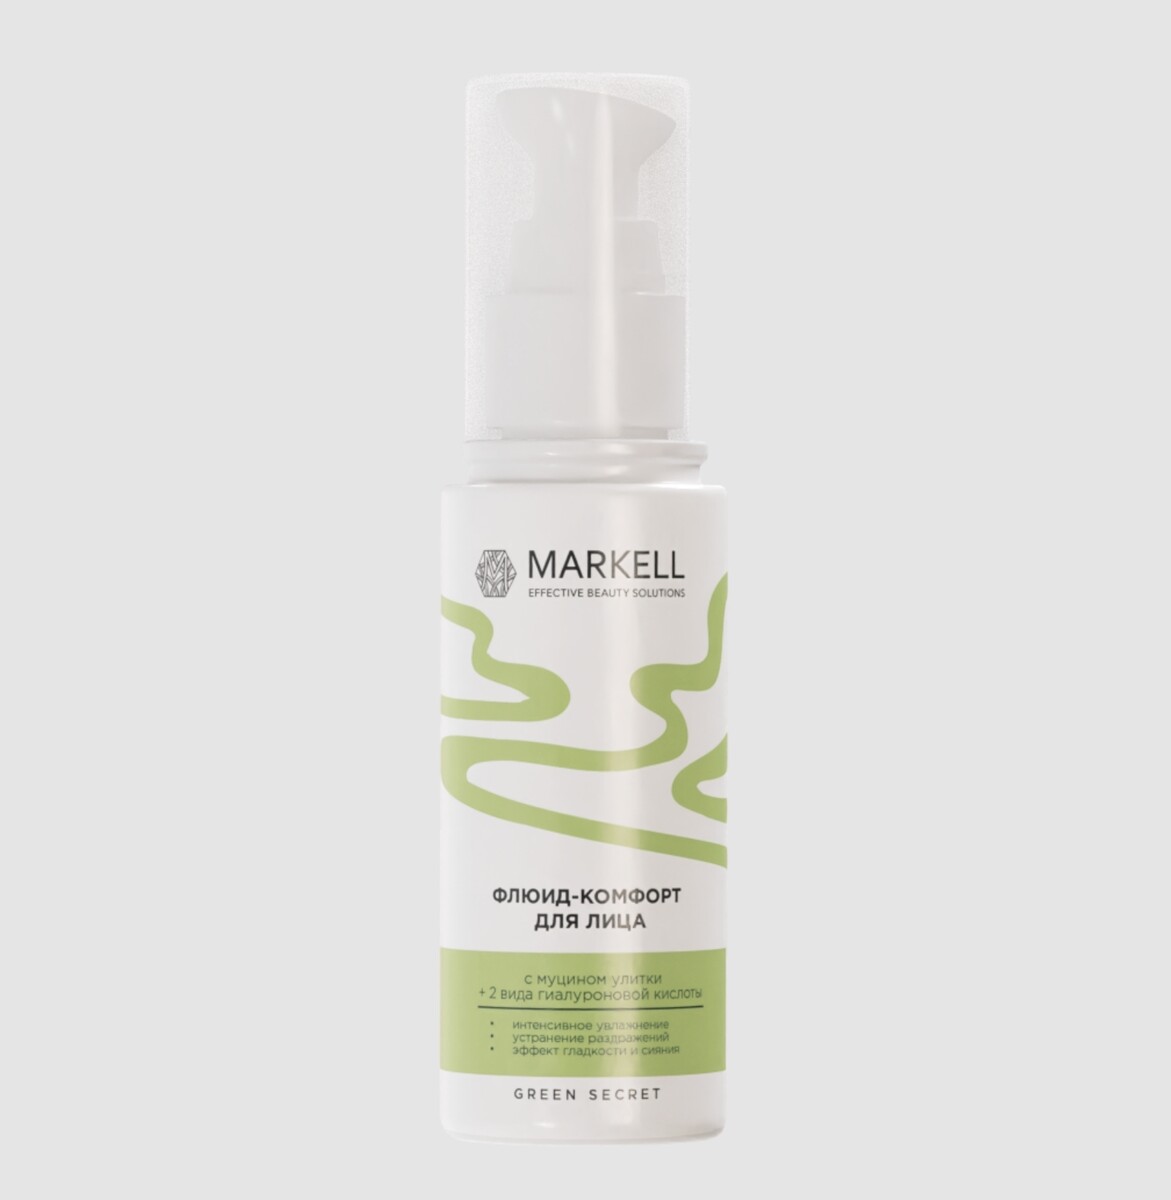 Markell green secret флюид-комфорт для лица,эффект гладкости и сияния 50мл aqua boost аква флюид для лица 50мл